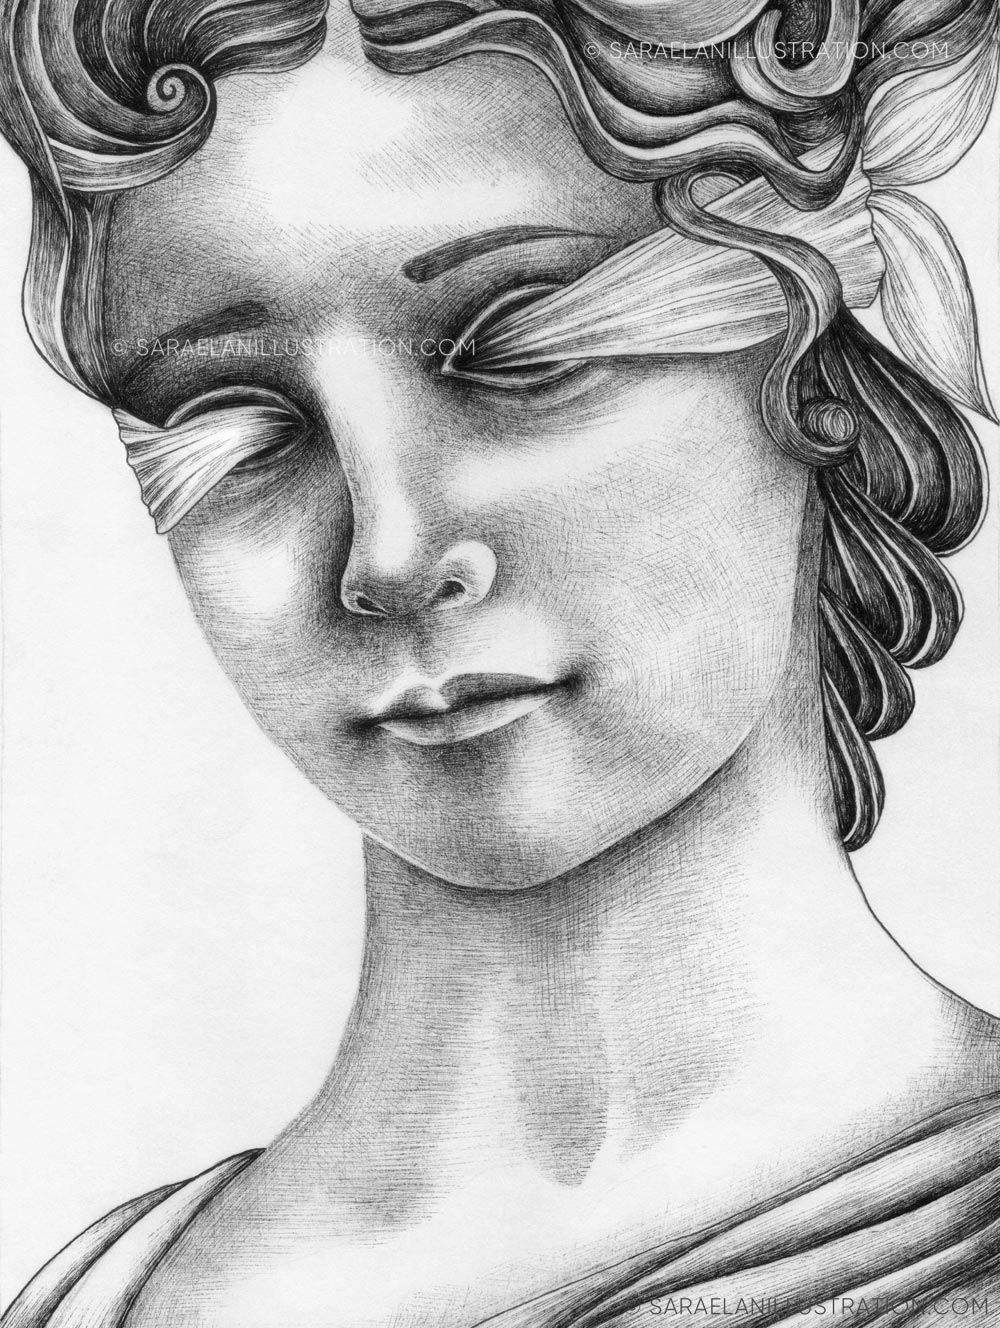 Disegno della dea Fortuna bendata in inchiostro tratteggio bianco e nero